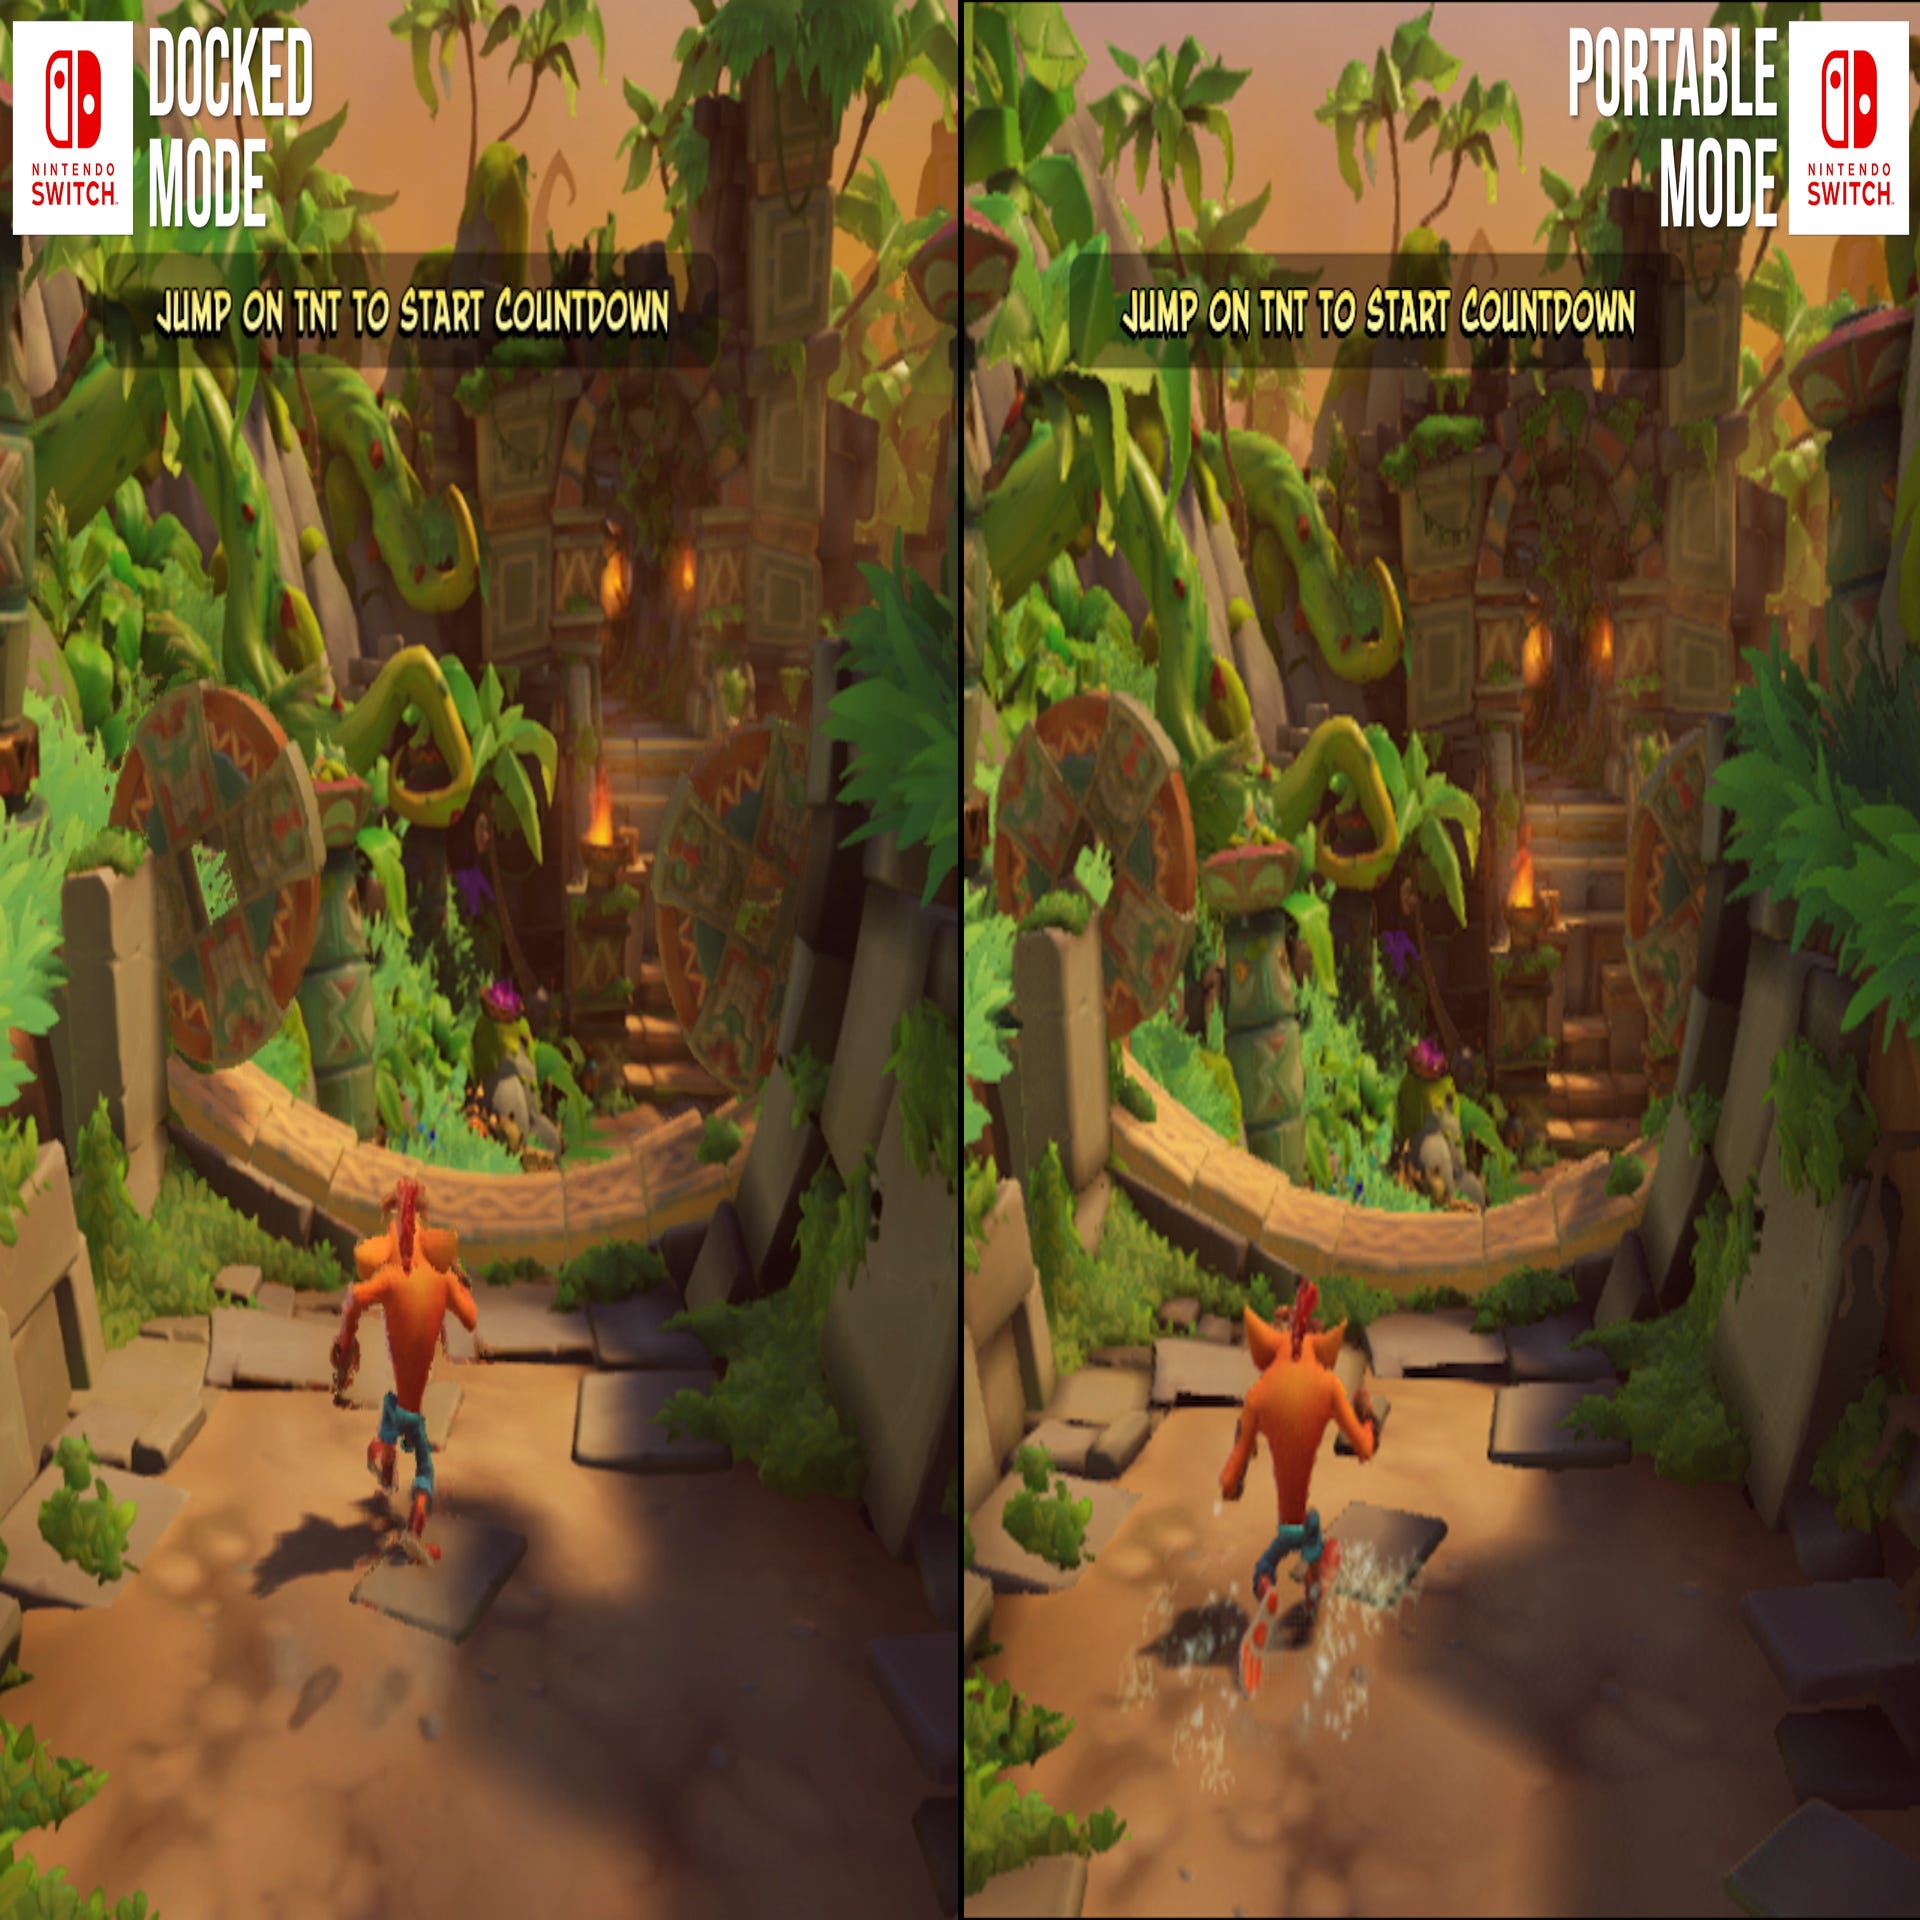 PS4 vs PS5 Upgrade Graphics Comparison - Crash Bandicoot 4 It's